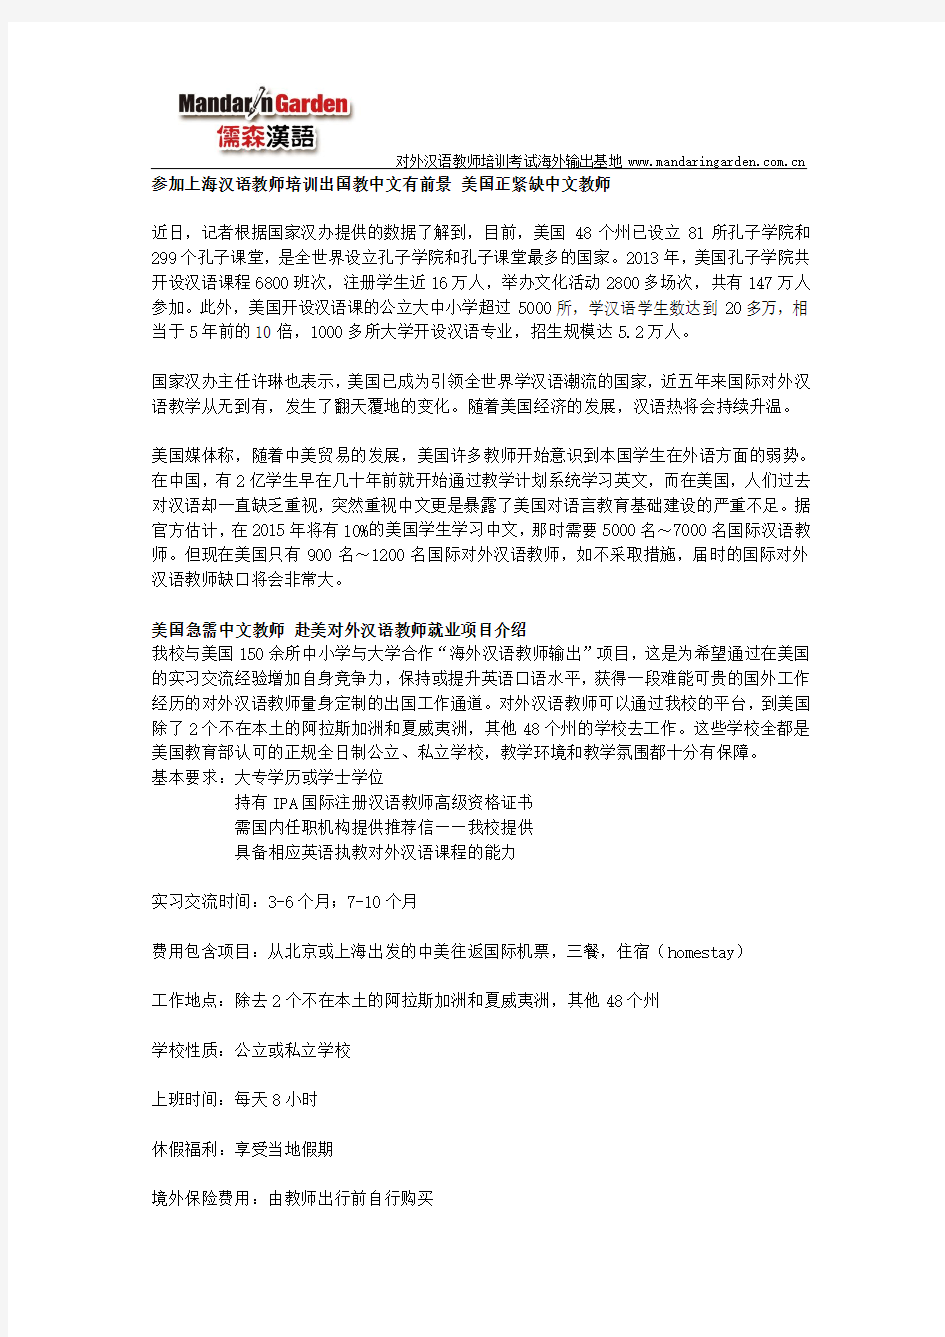 参加上海汉语教师培训出国教中文有前景 美国正紧缺中文教师